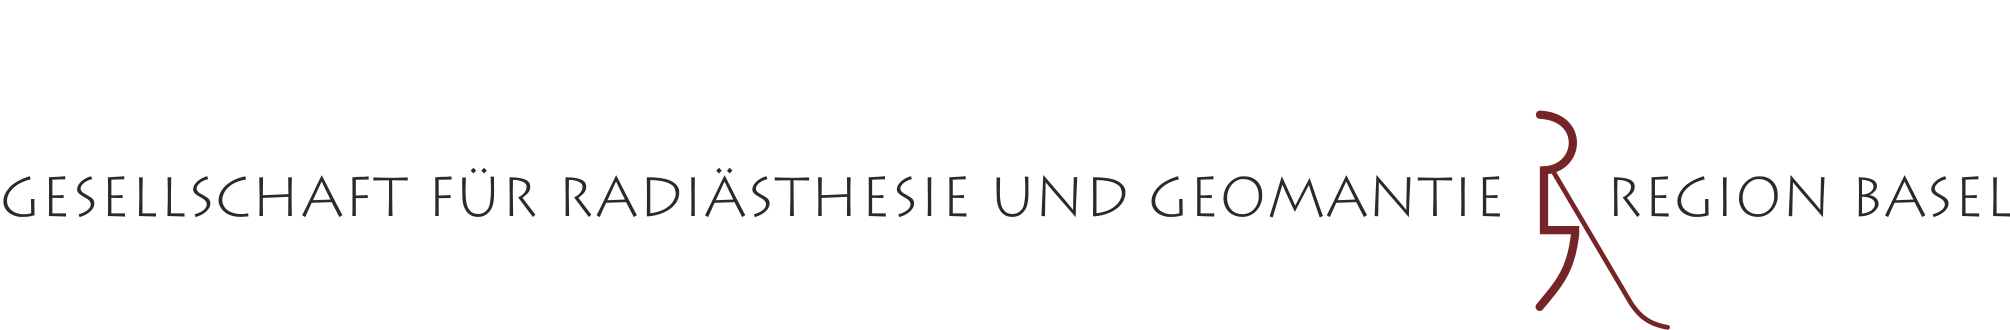 Gesellschaft für Radiästhesie und Geomantie Region Basel Logo